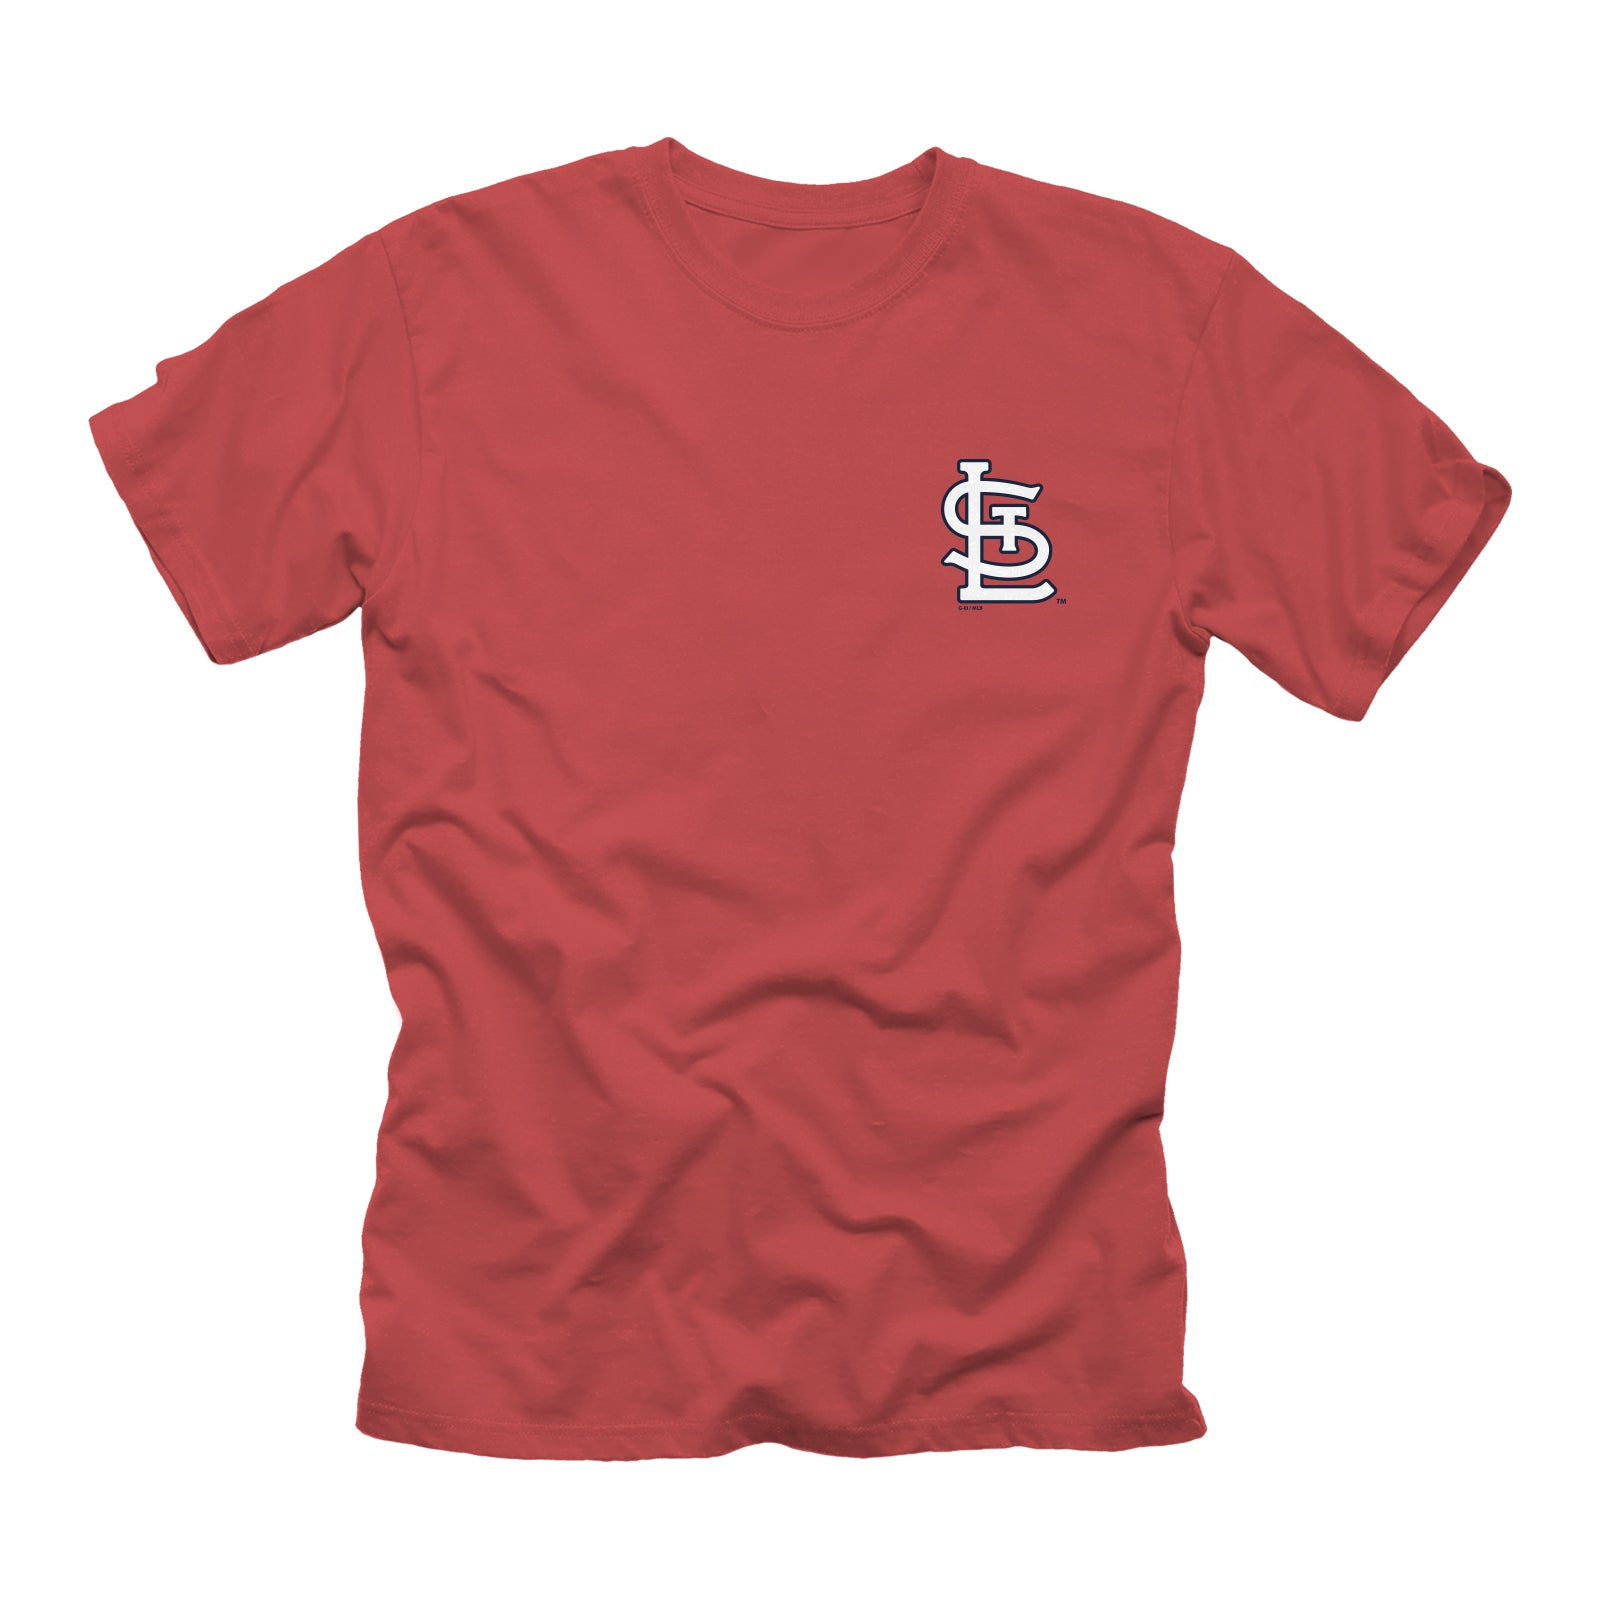 47 Women's St. Louis Cardinals Red Celeste Long Sleeve T-Shirt